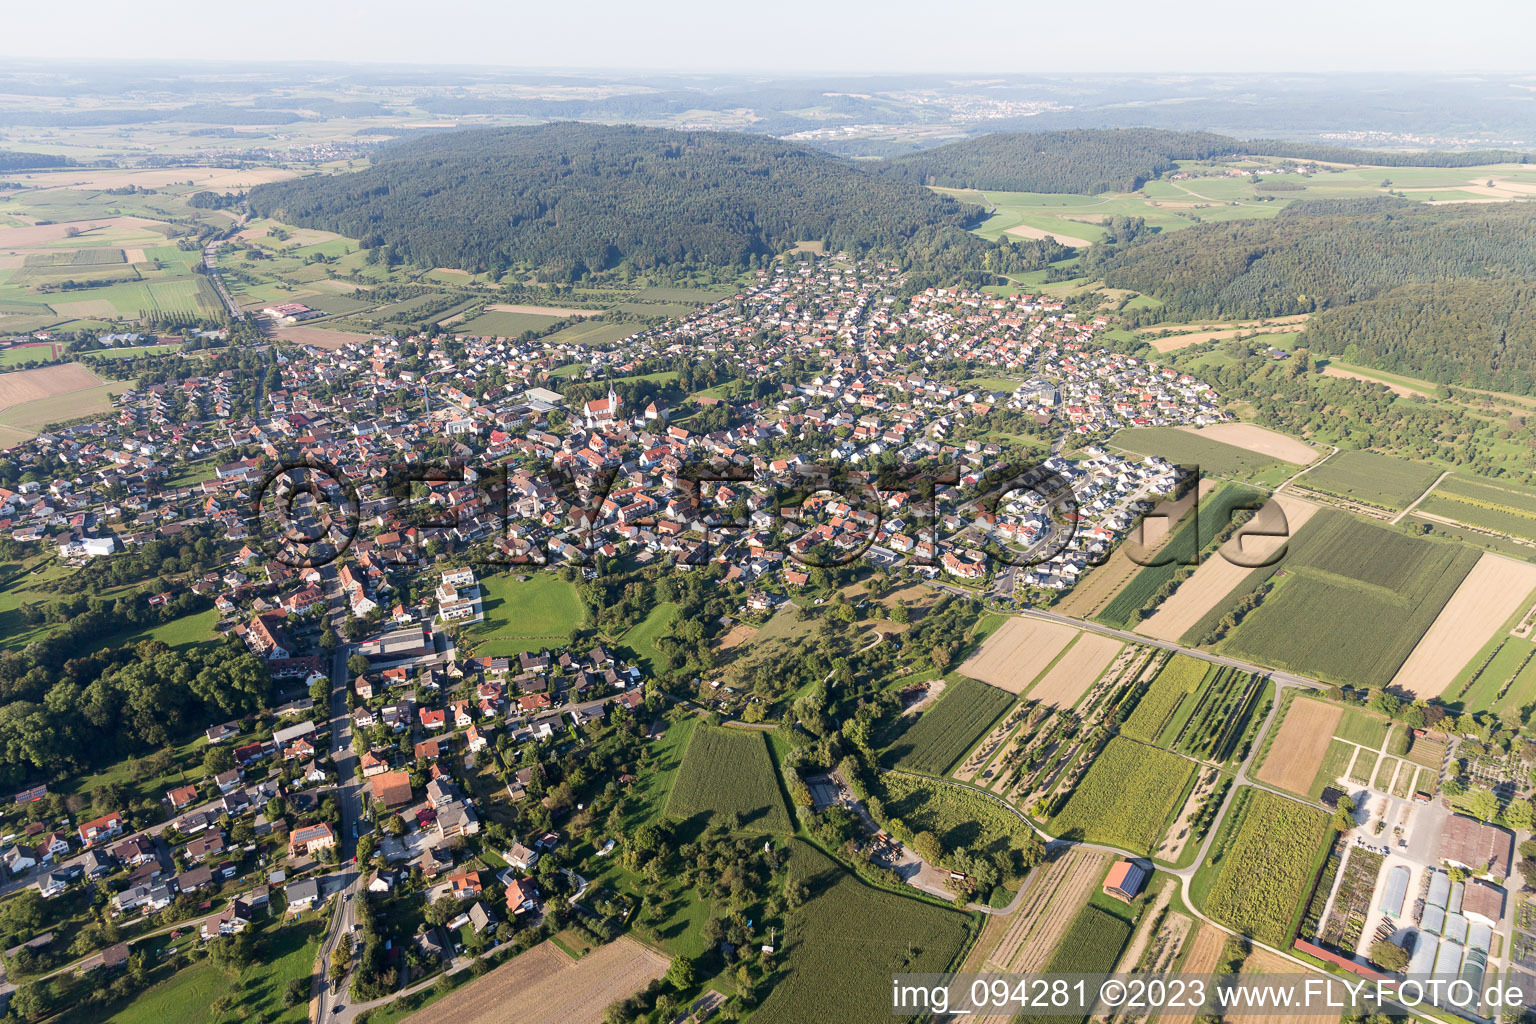 Steißlingen im Bundesland Baden-Württemberg, Deutschland aus der Luft